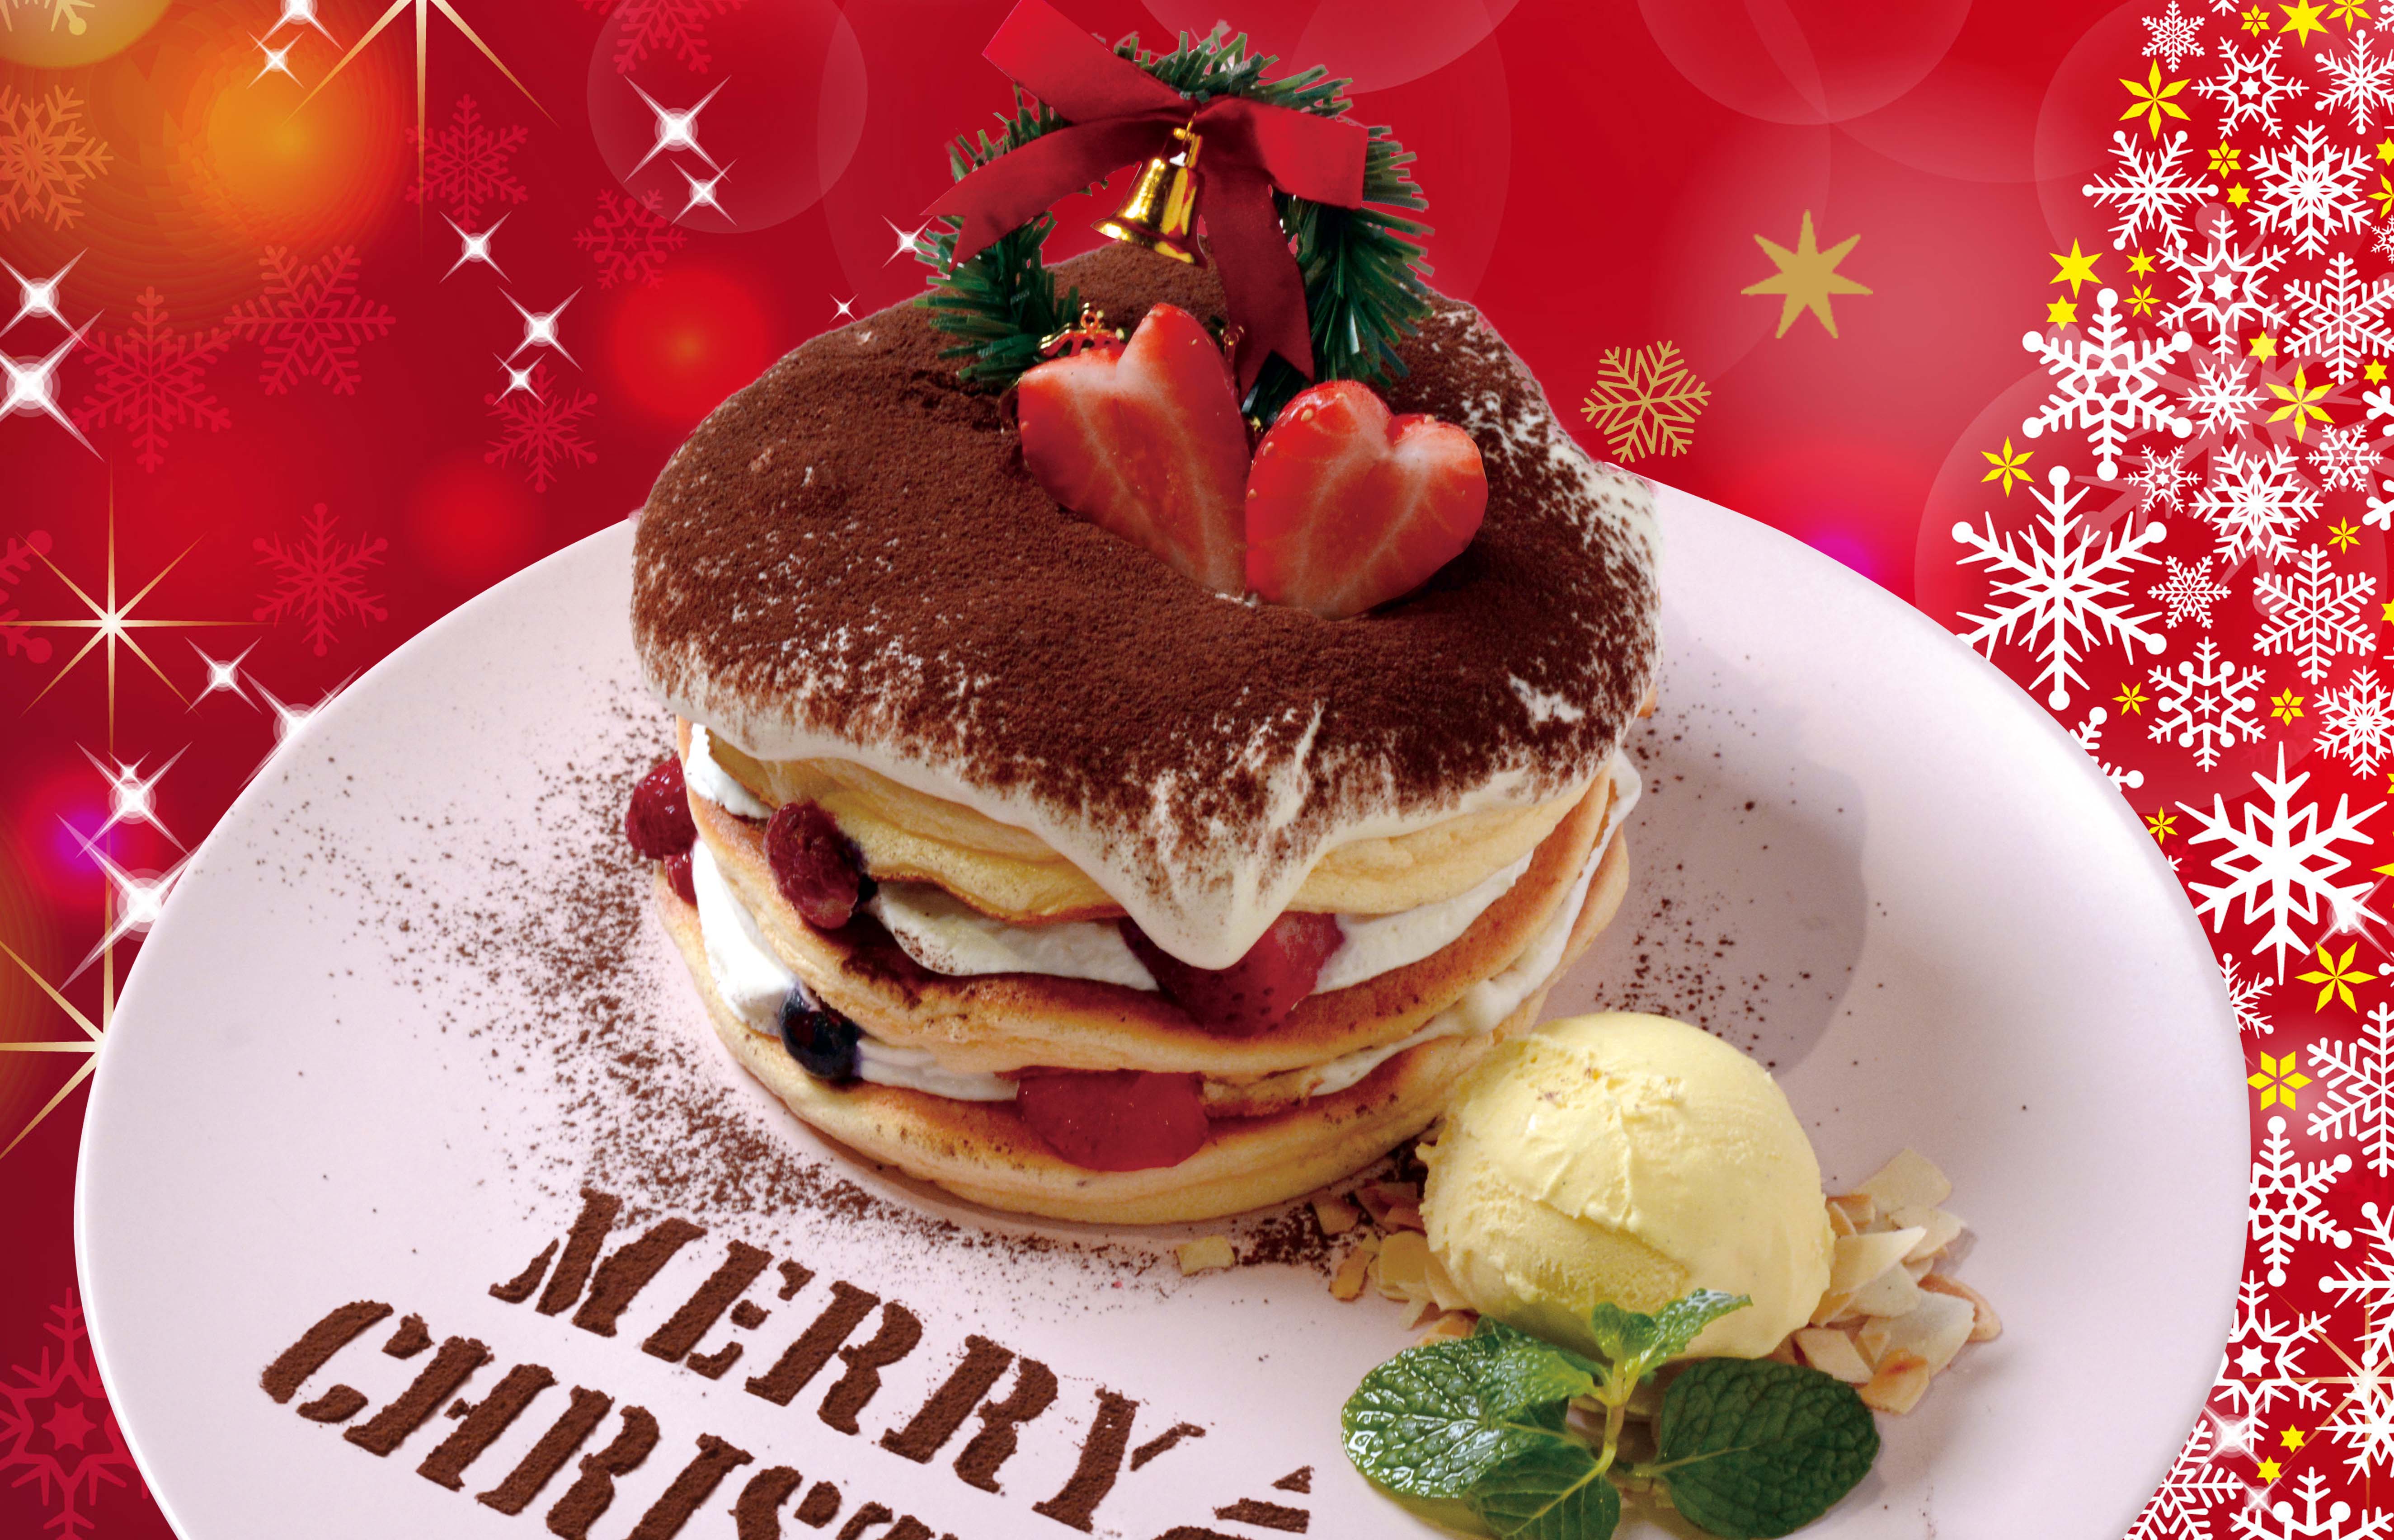 クリスマス 期間限定 パンケーキ 12月5日 土 25日 金 までの日間限定 今大阪で大人気 ふわふわ揺れるミルフィーユパンケーキ の ベルヴィル からティラミスパンケーキが新登場 株式会社サンパークのプレスリリース